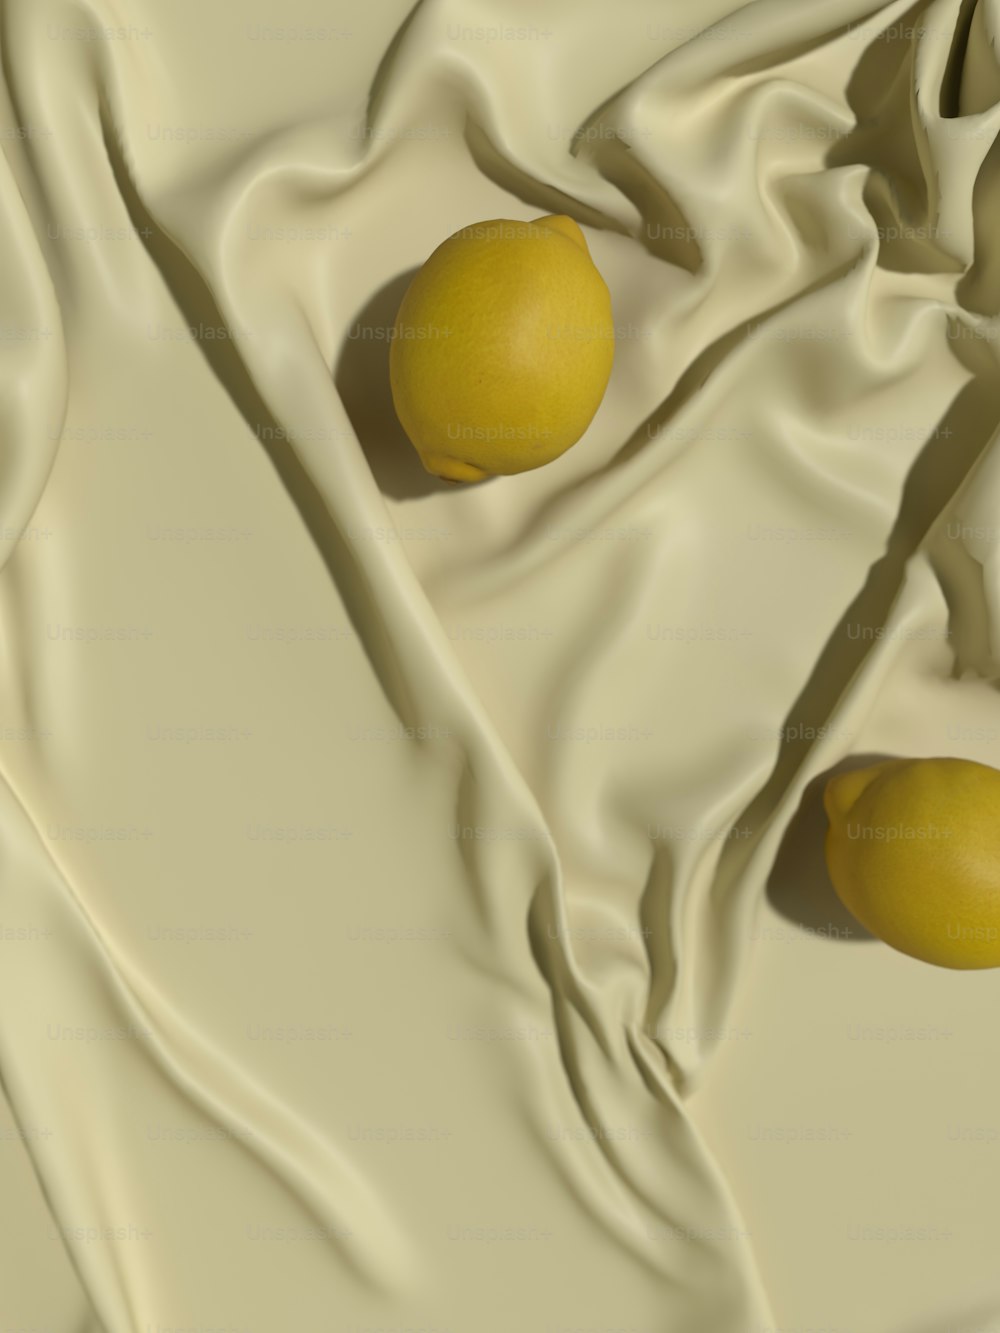 Dos limones sentados sobre un paño blanco